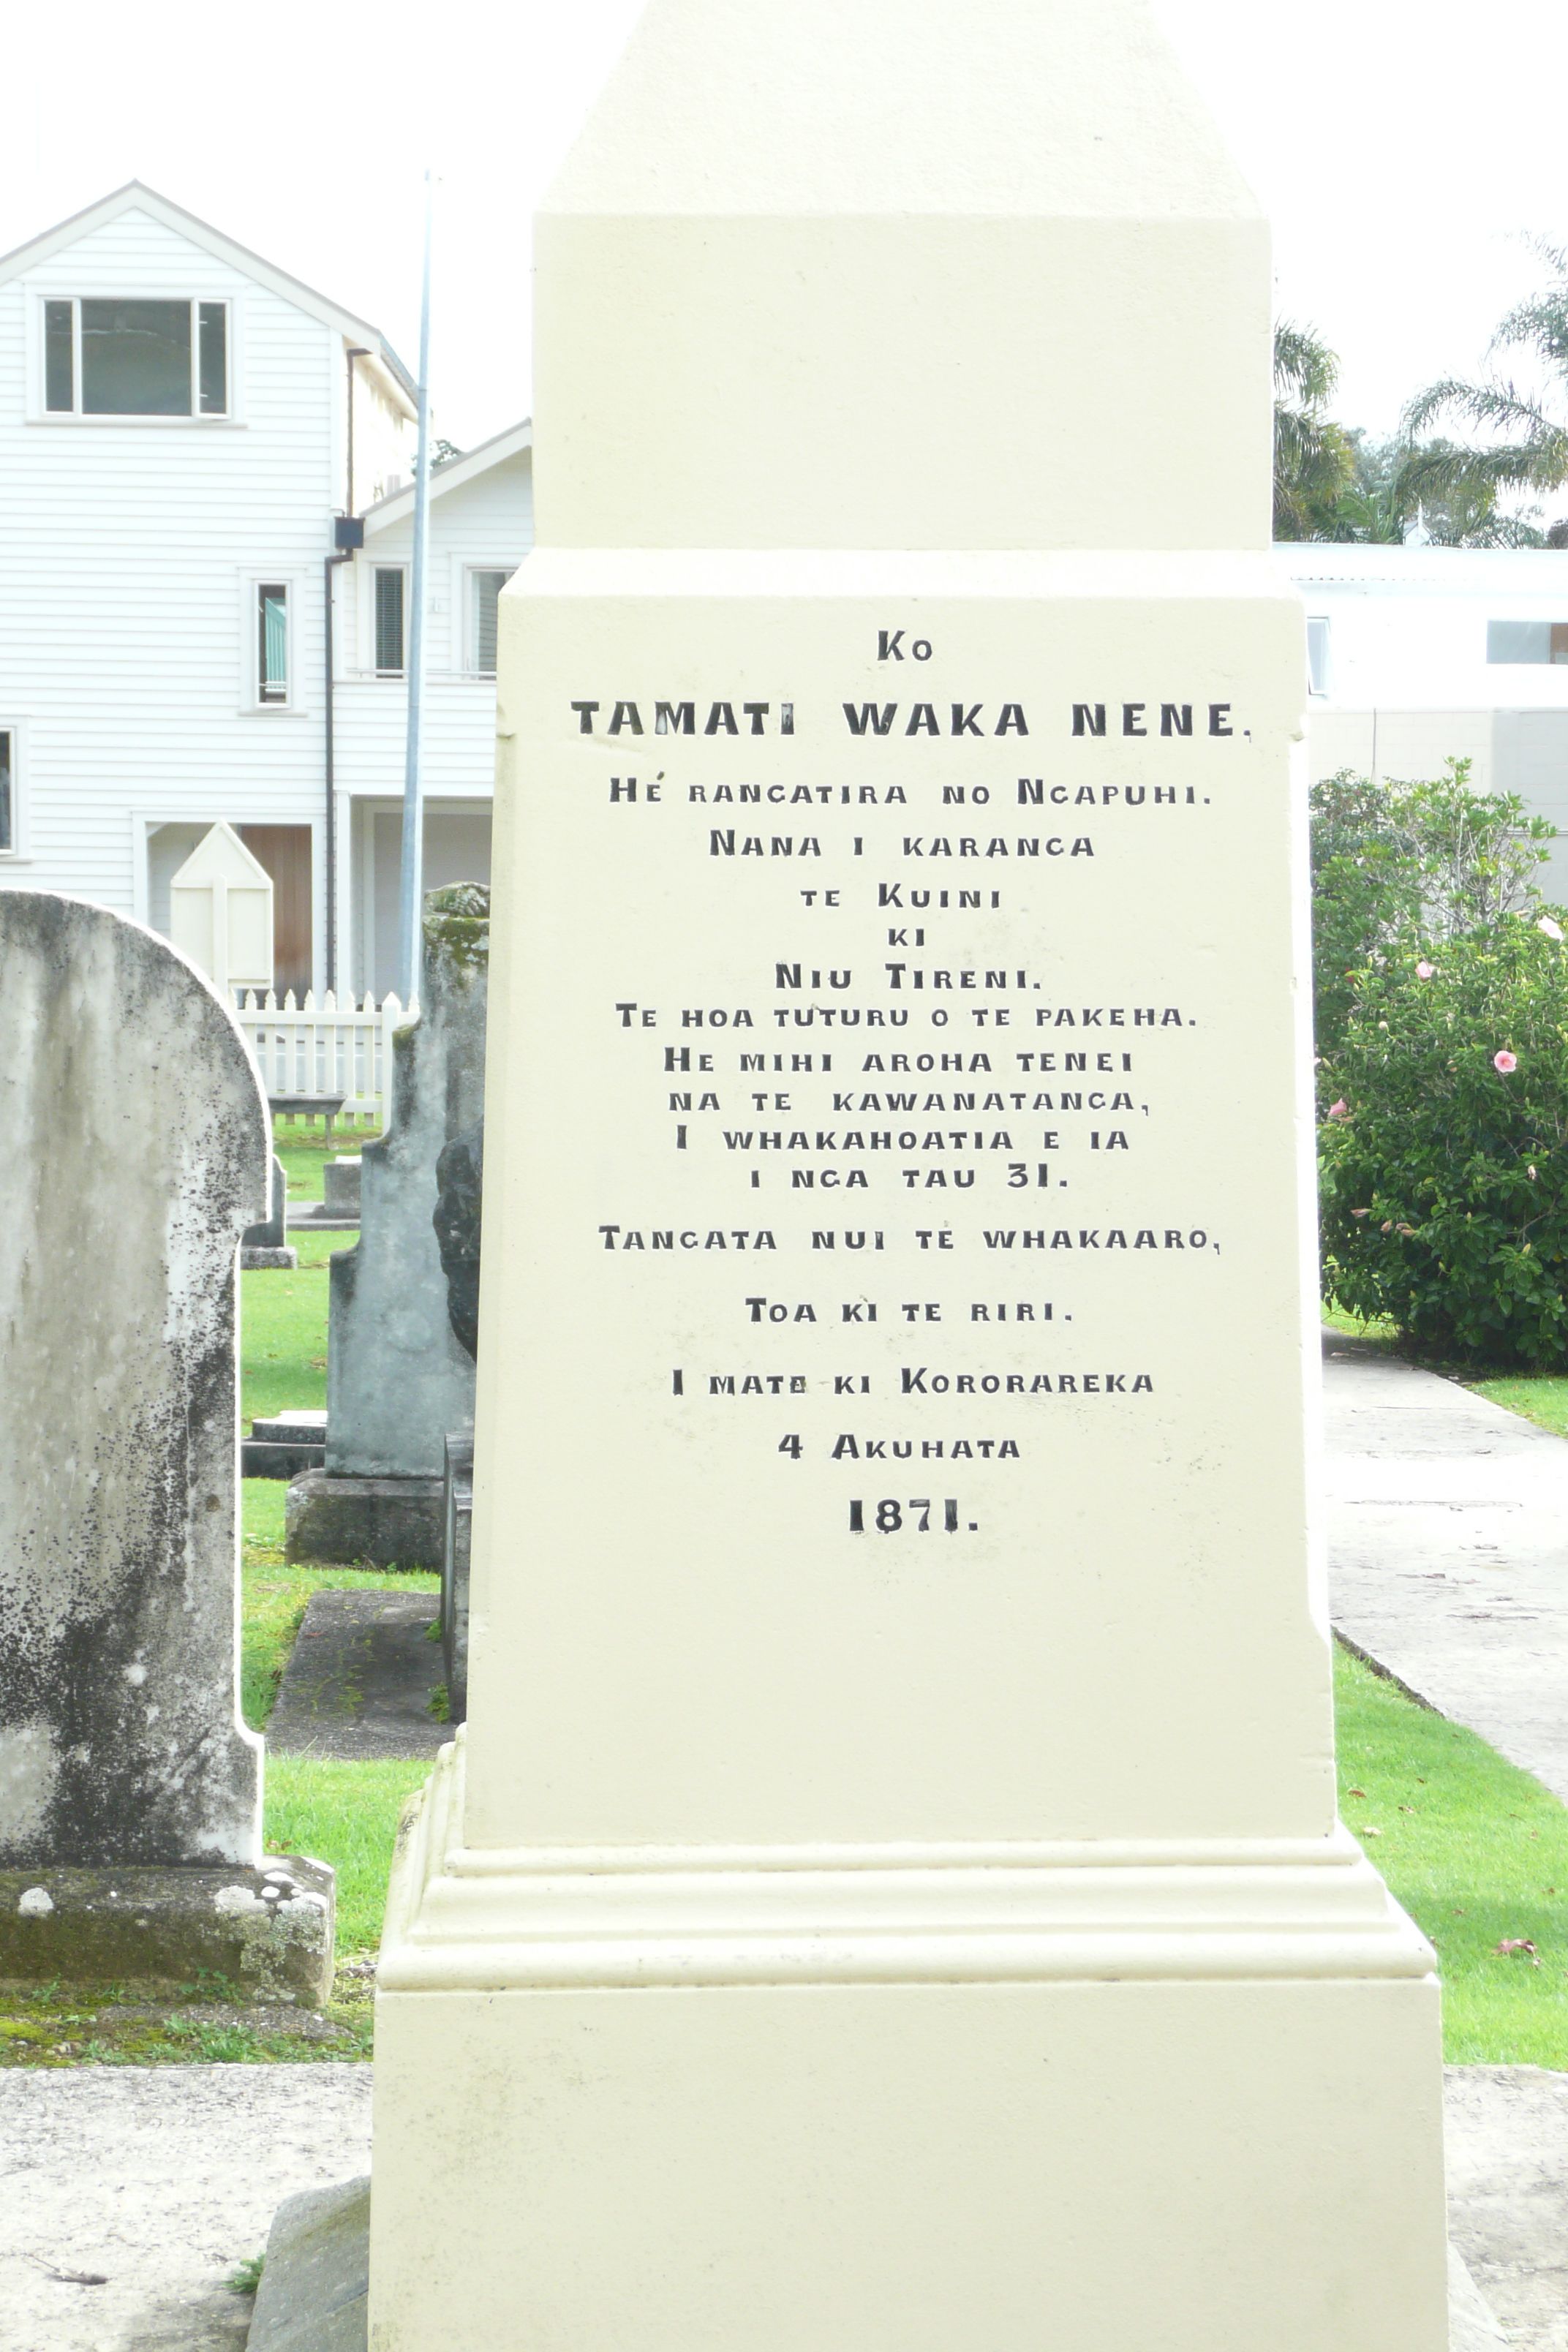 Memorial stone for Tamati Waka Nene at Christ Church